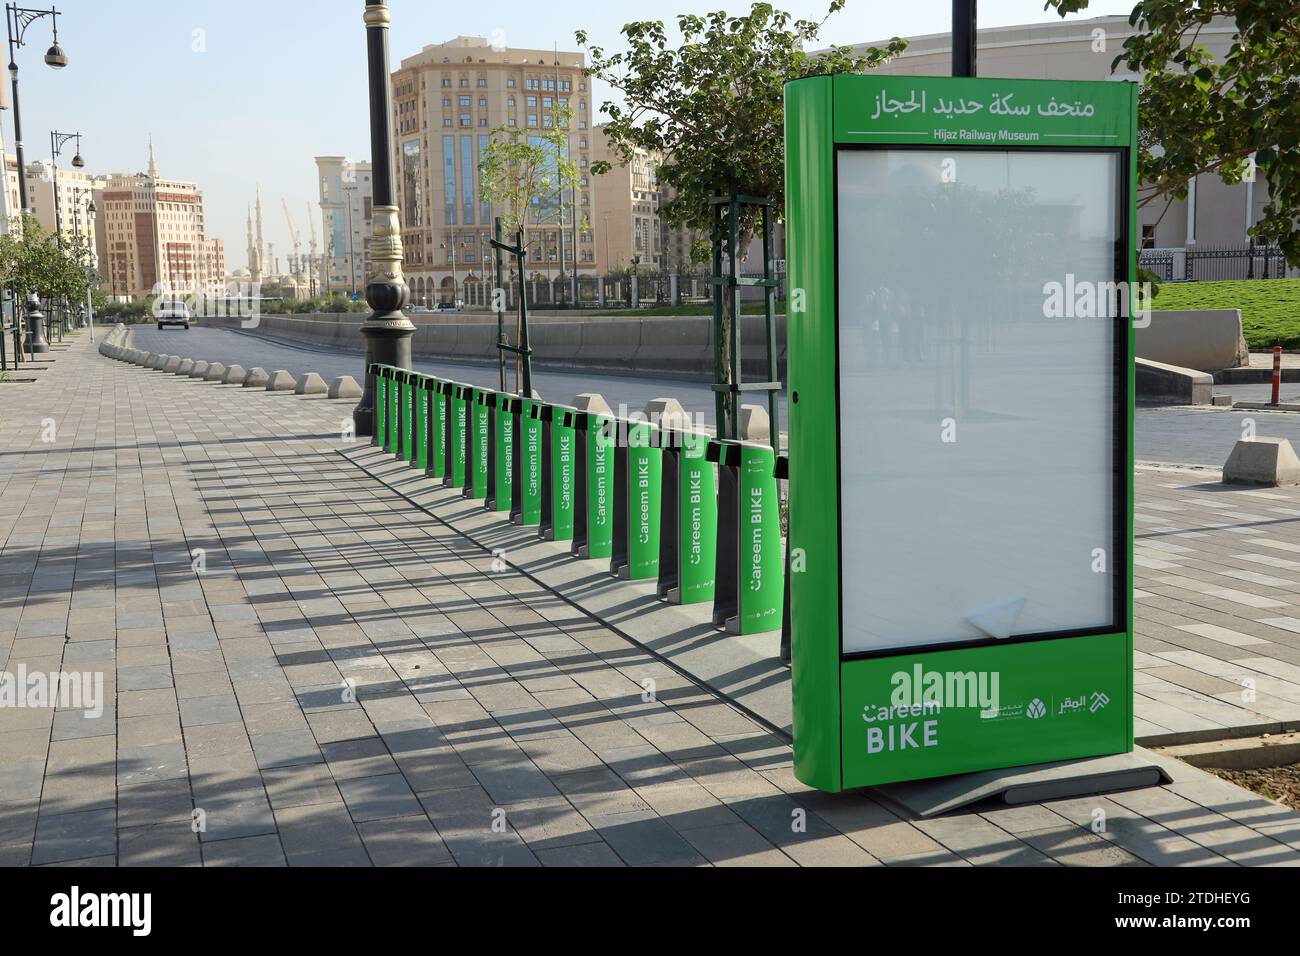 Careem bike station at Medina in Saudi Arabia Stock Photo